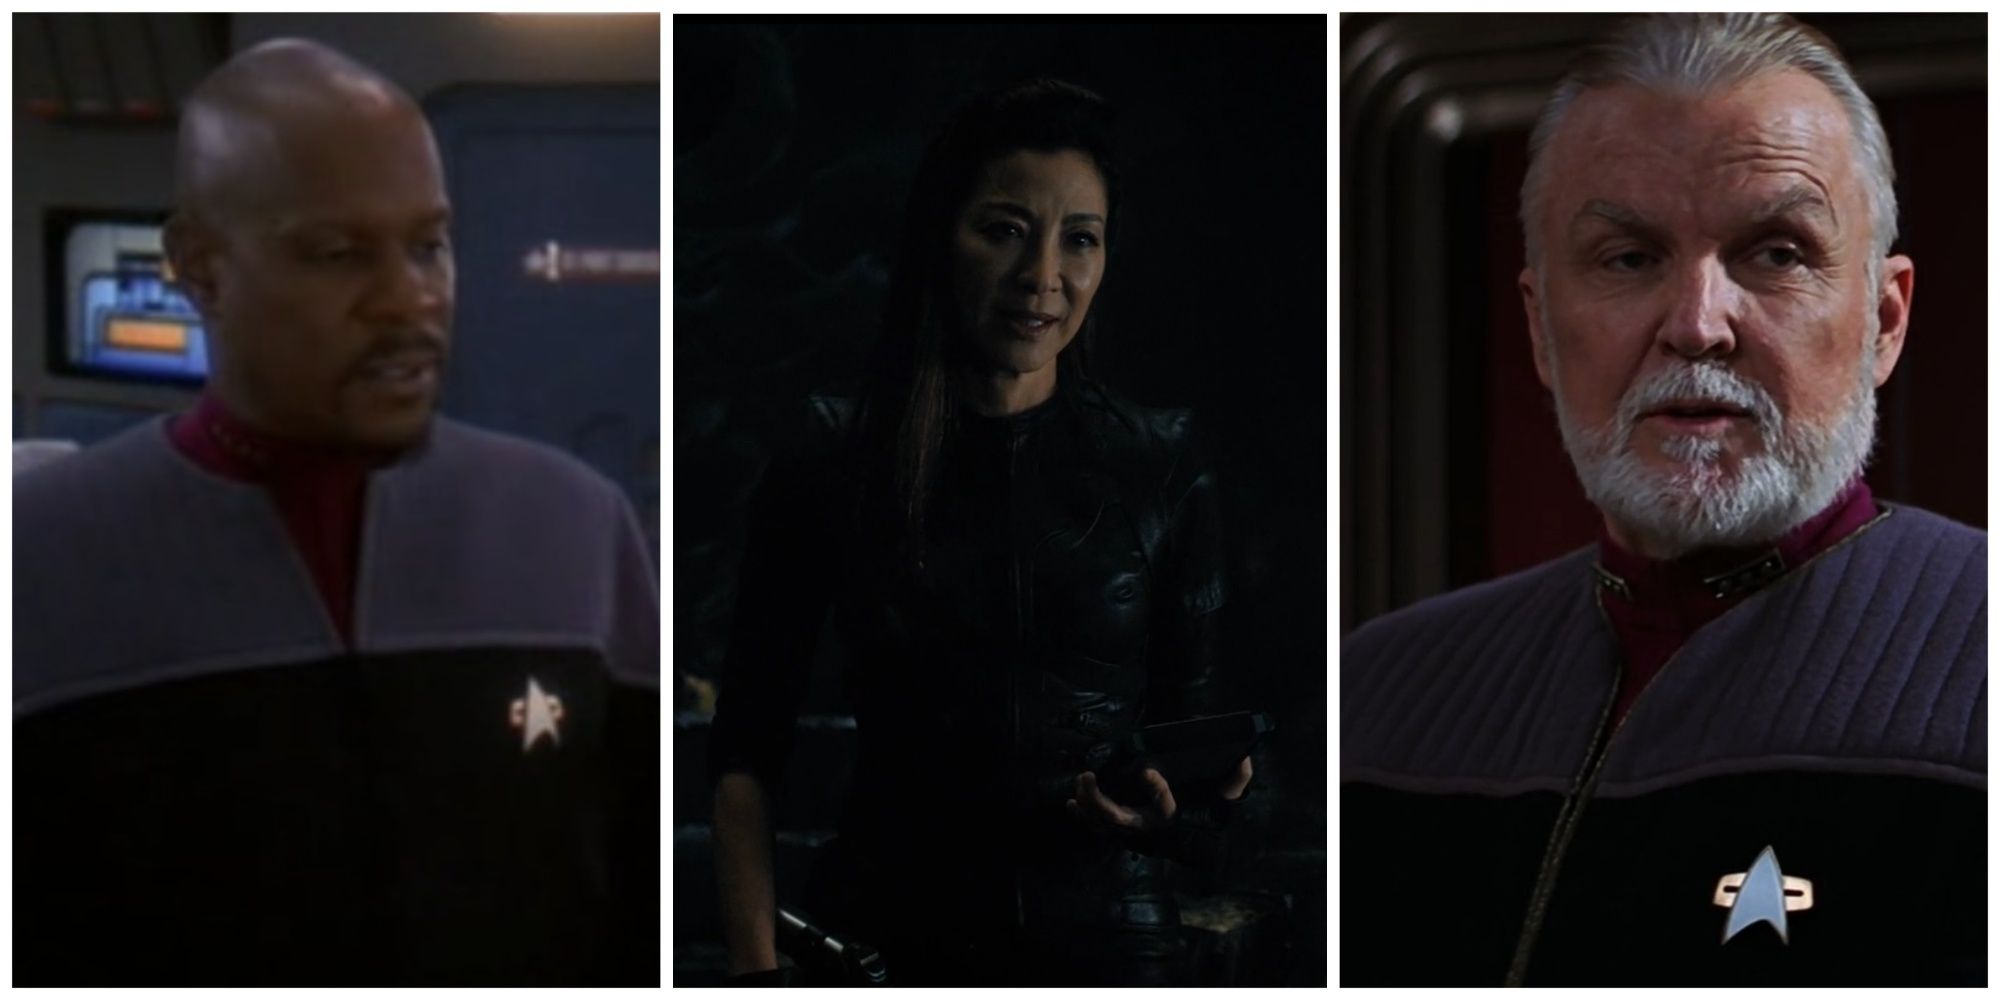 Three Federation villains from Star Trek.